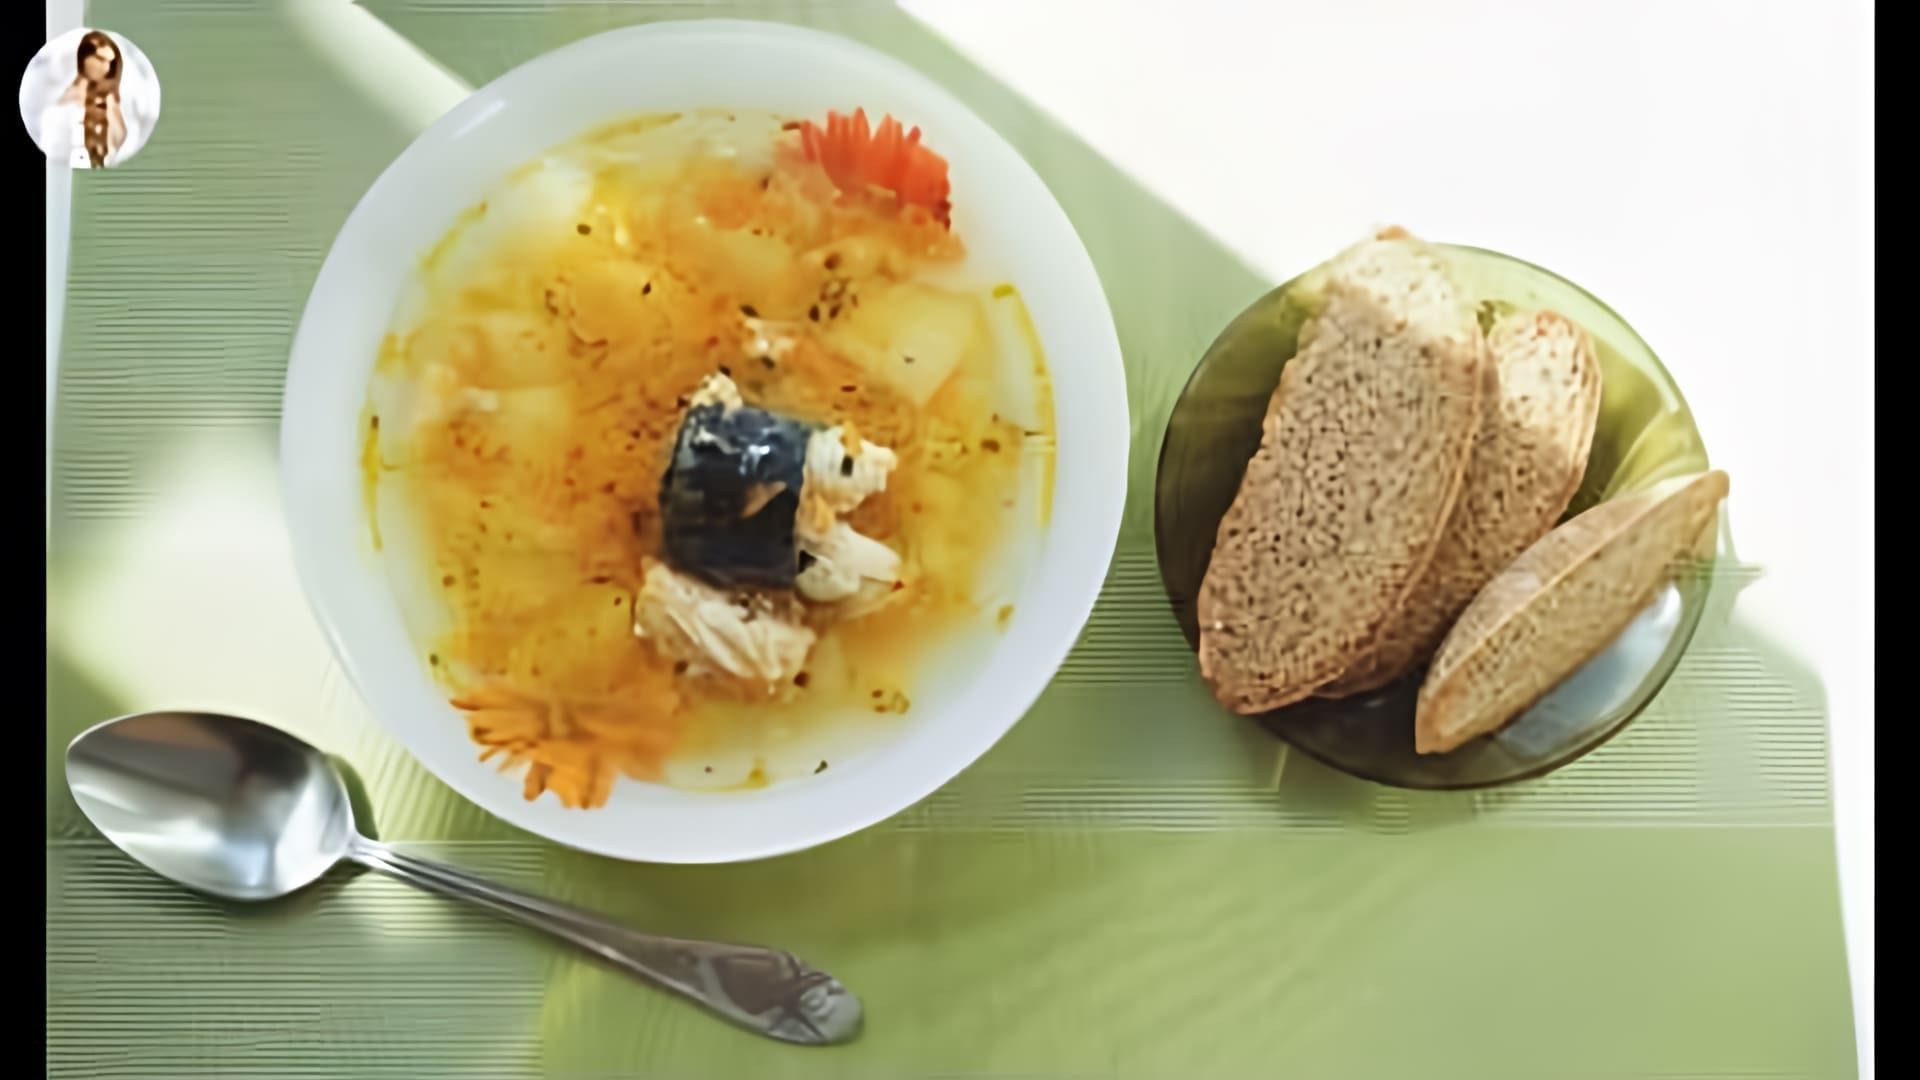 Суп со свежей скумбрией - это наваристый рыбный суп, который готовится из свежей скумбрии, овощей и специй